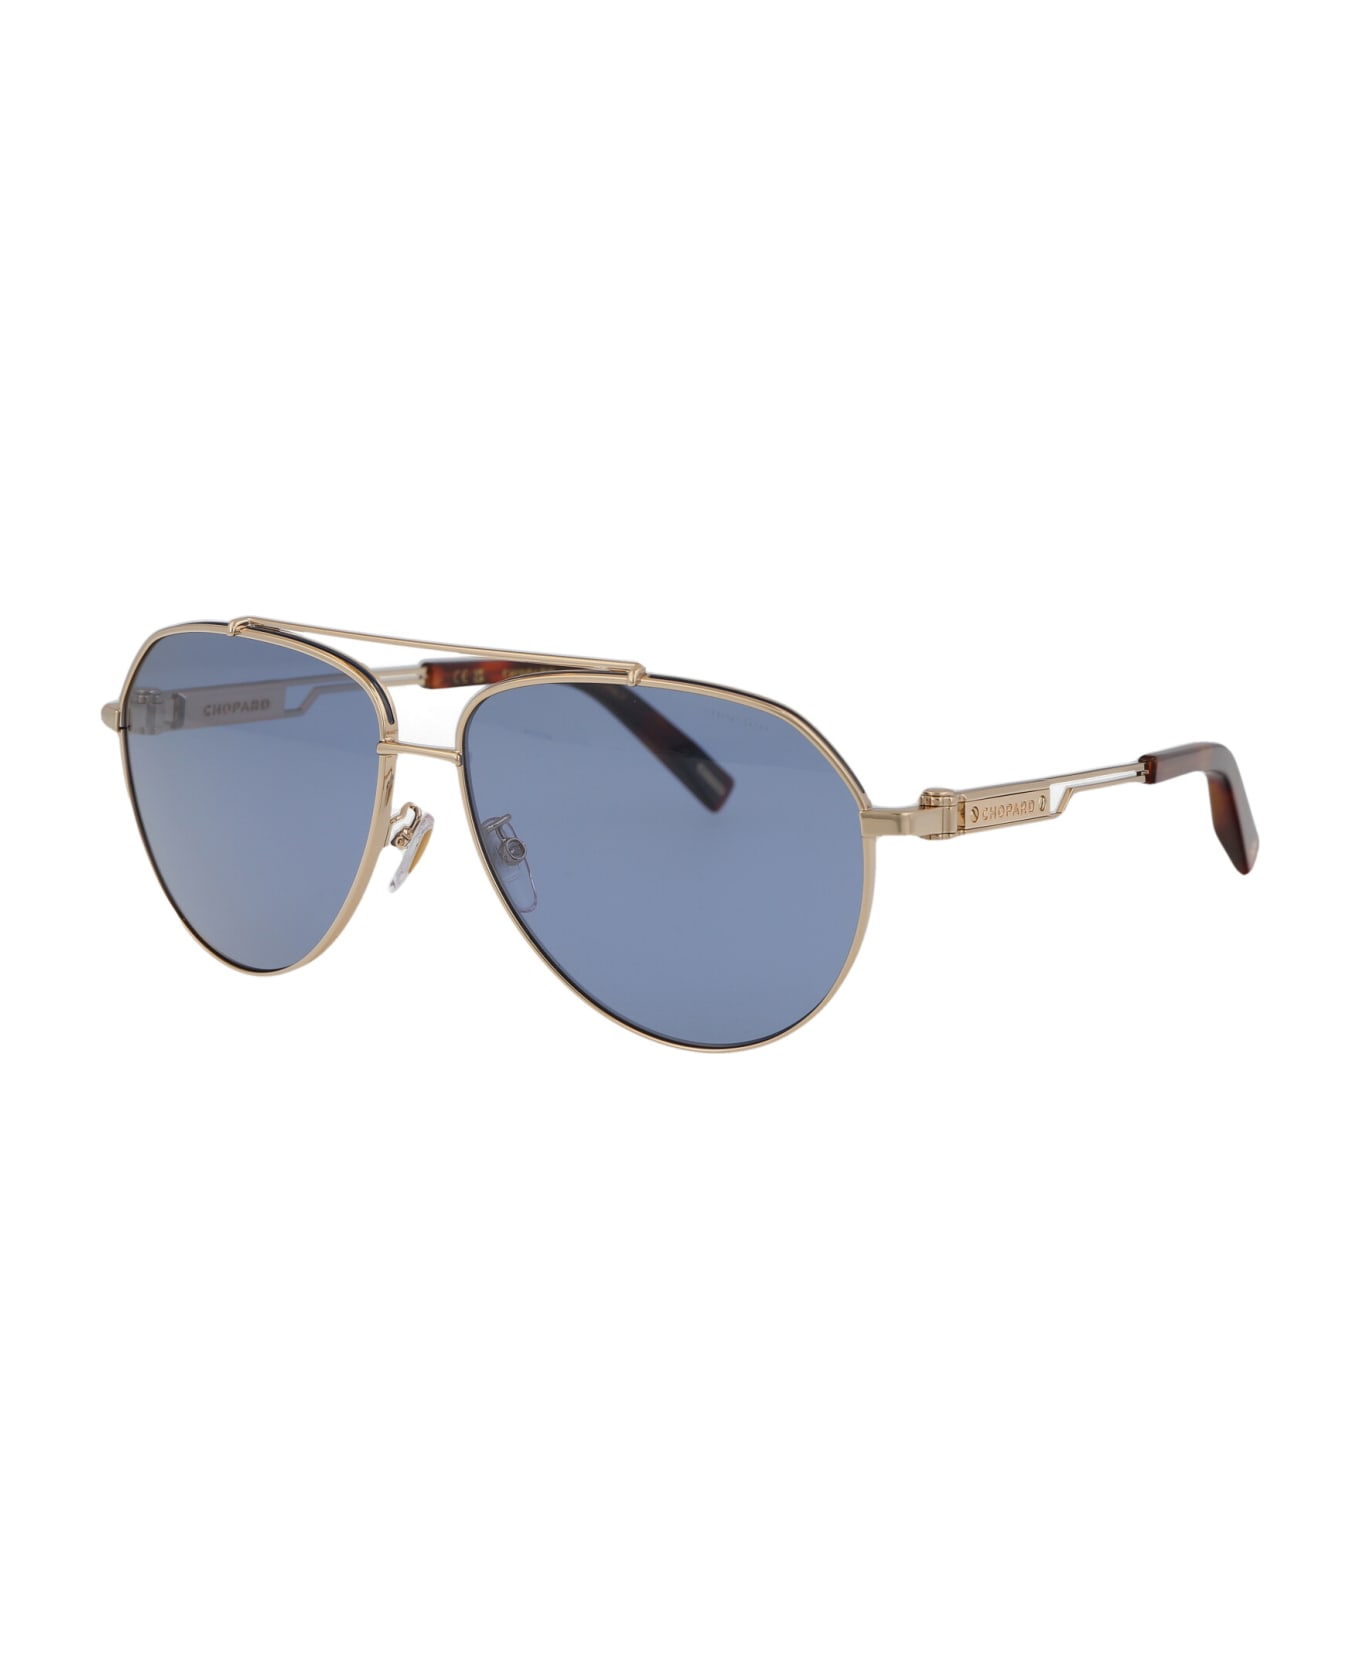 Chopard Schg63 Sunglasses - 300P GOLD